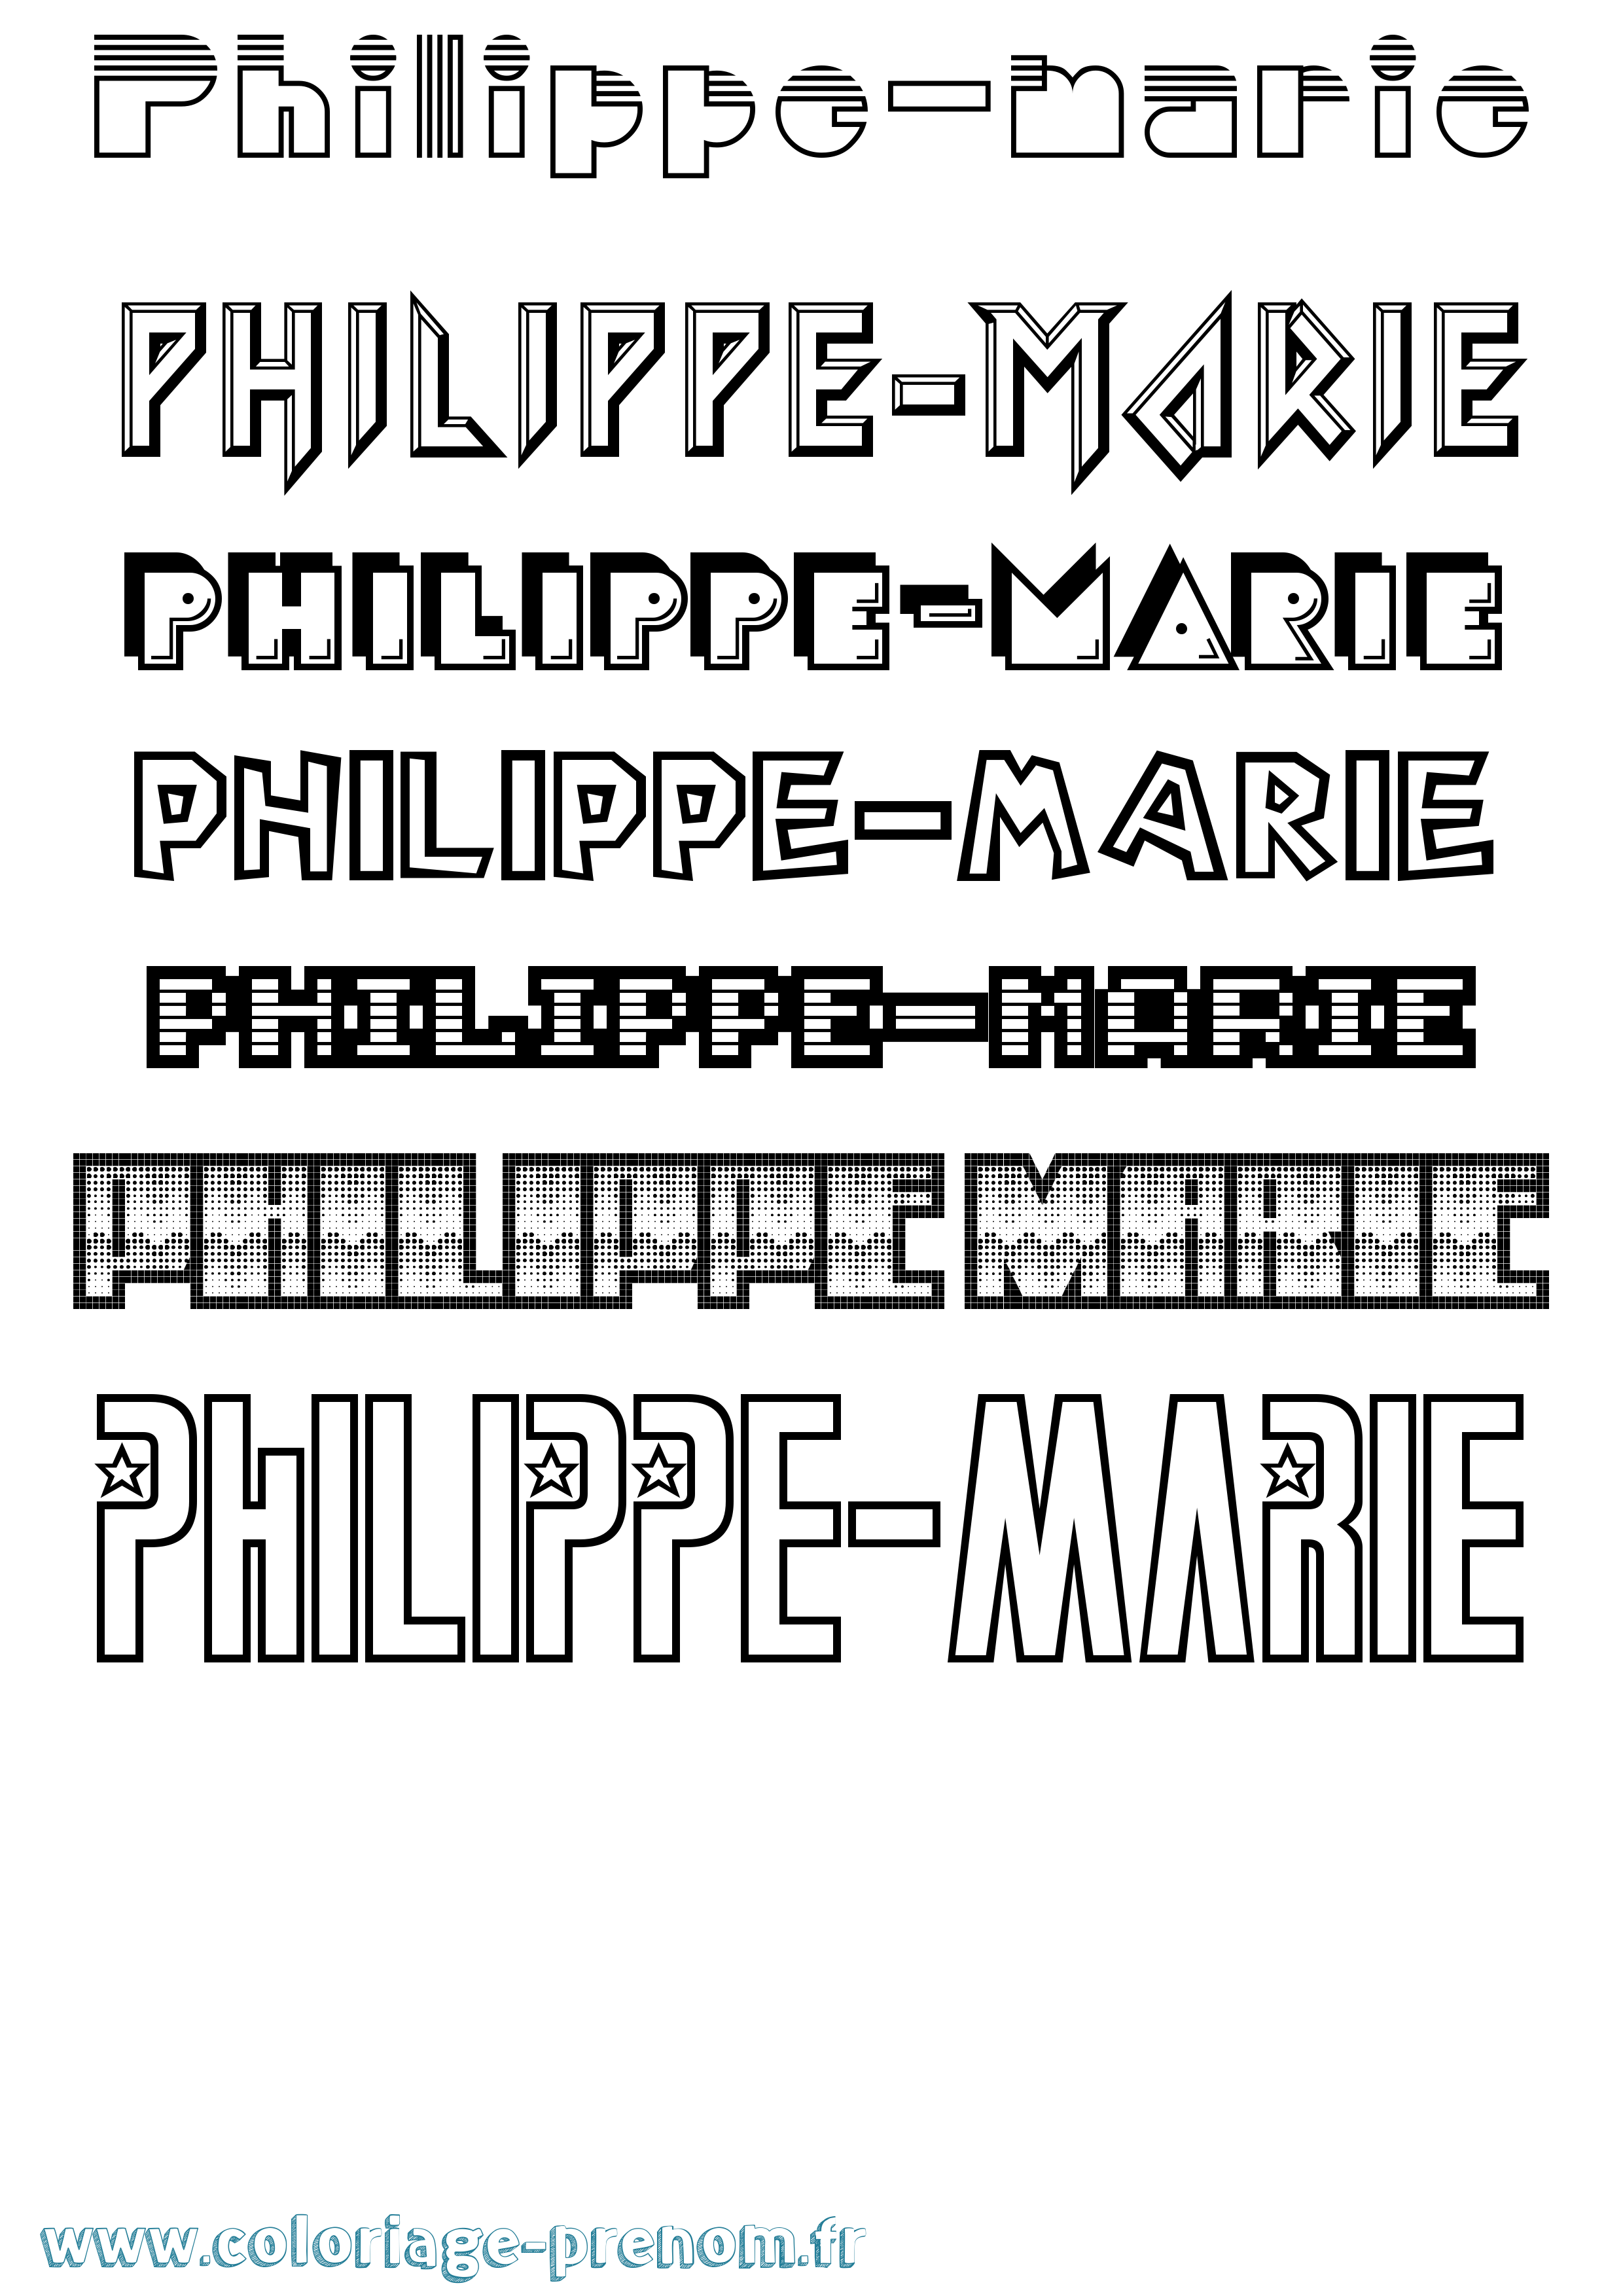 Coloriage prénom Philippe-Marie Jeux Vidéos